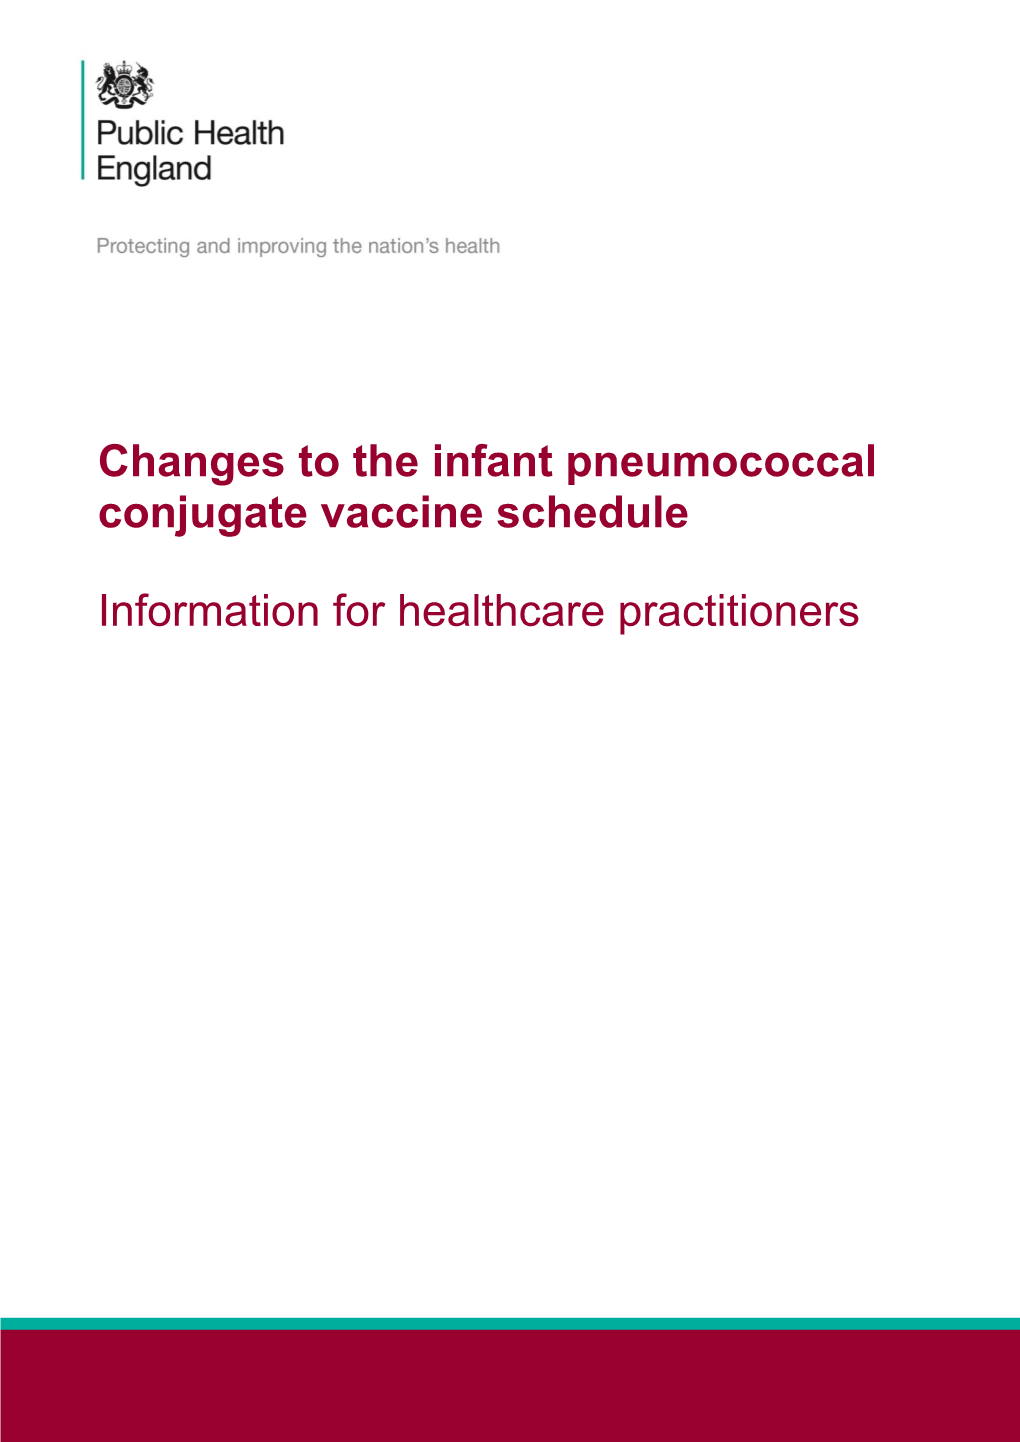 (Pneumococcal Conjugate Vaccine) Schedule